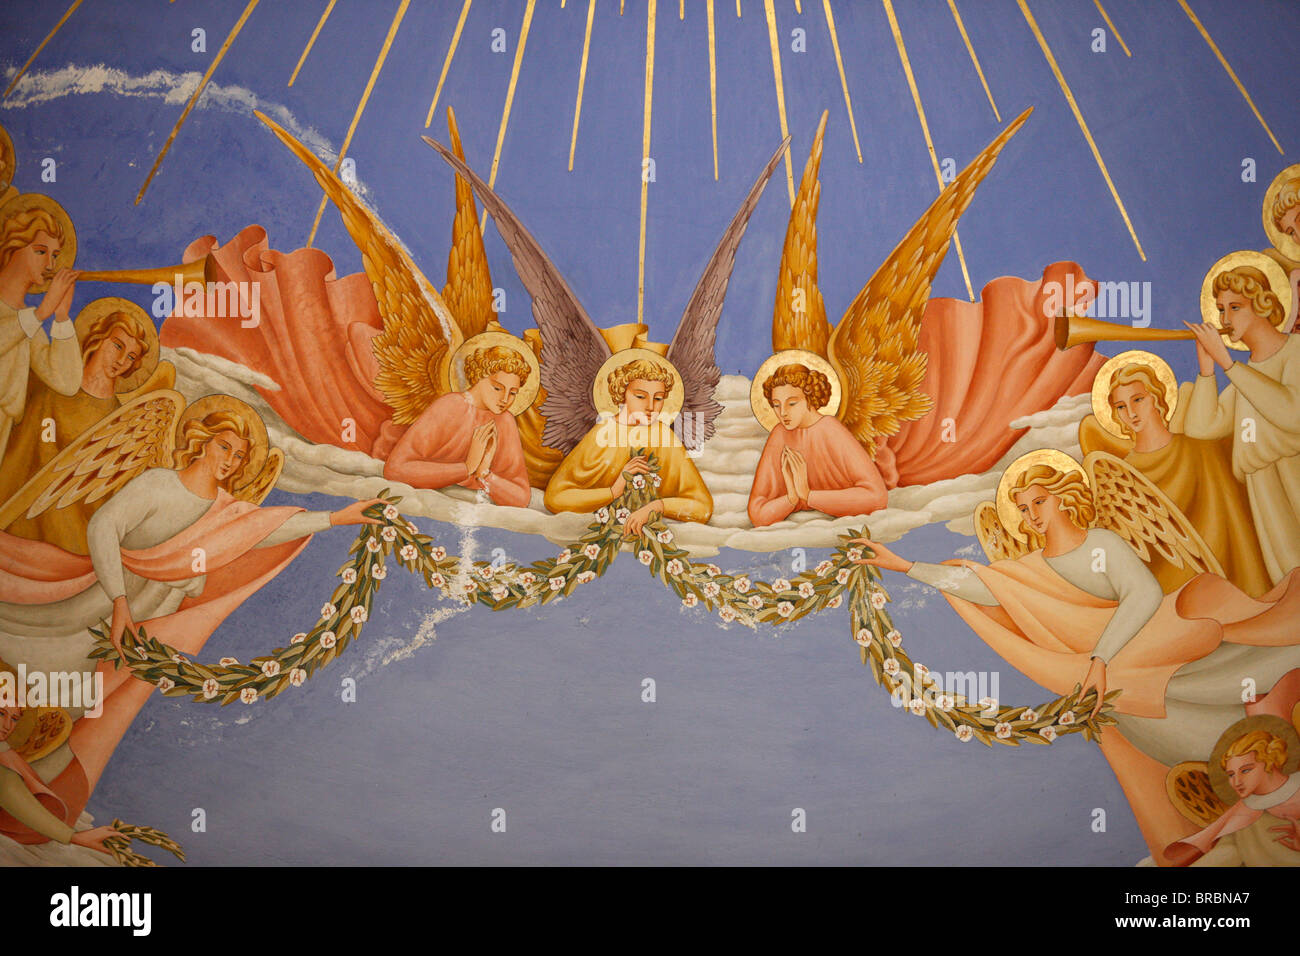 Détail des anges dans une fresque dans l'église De visite à Ein Kerem, Israël Banque D'Images